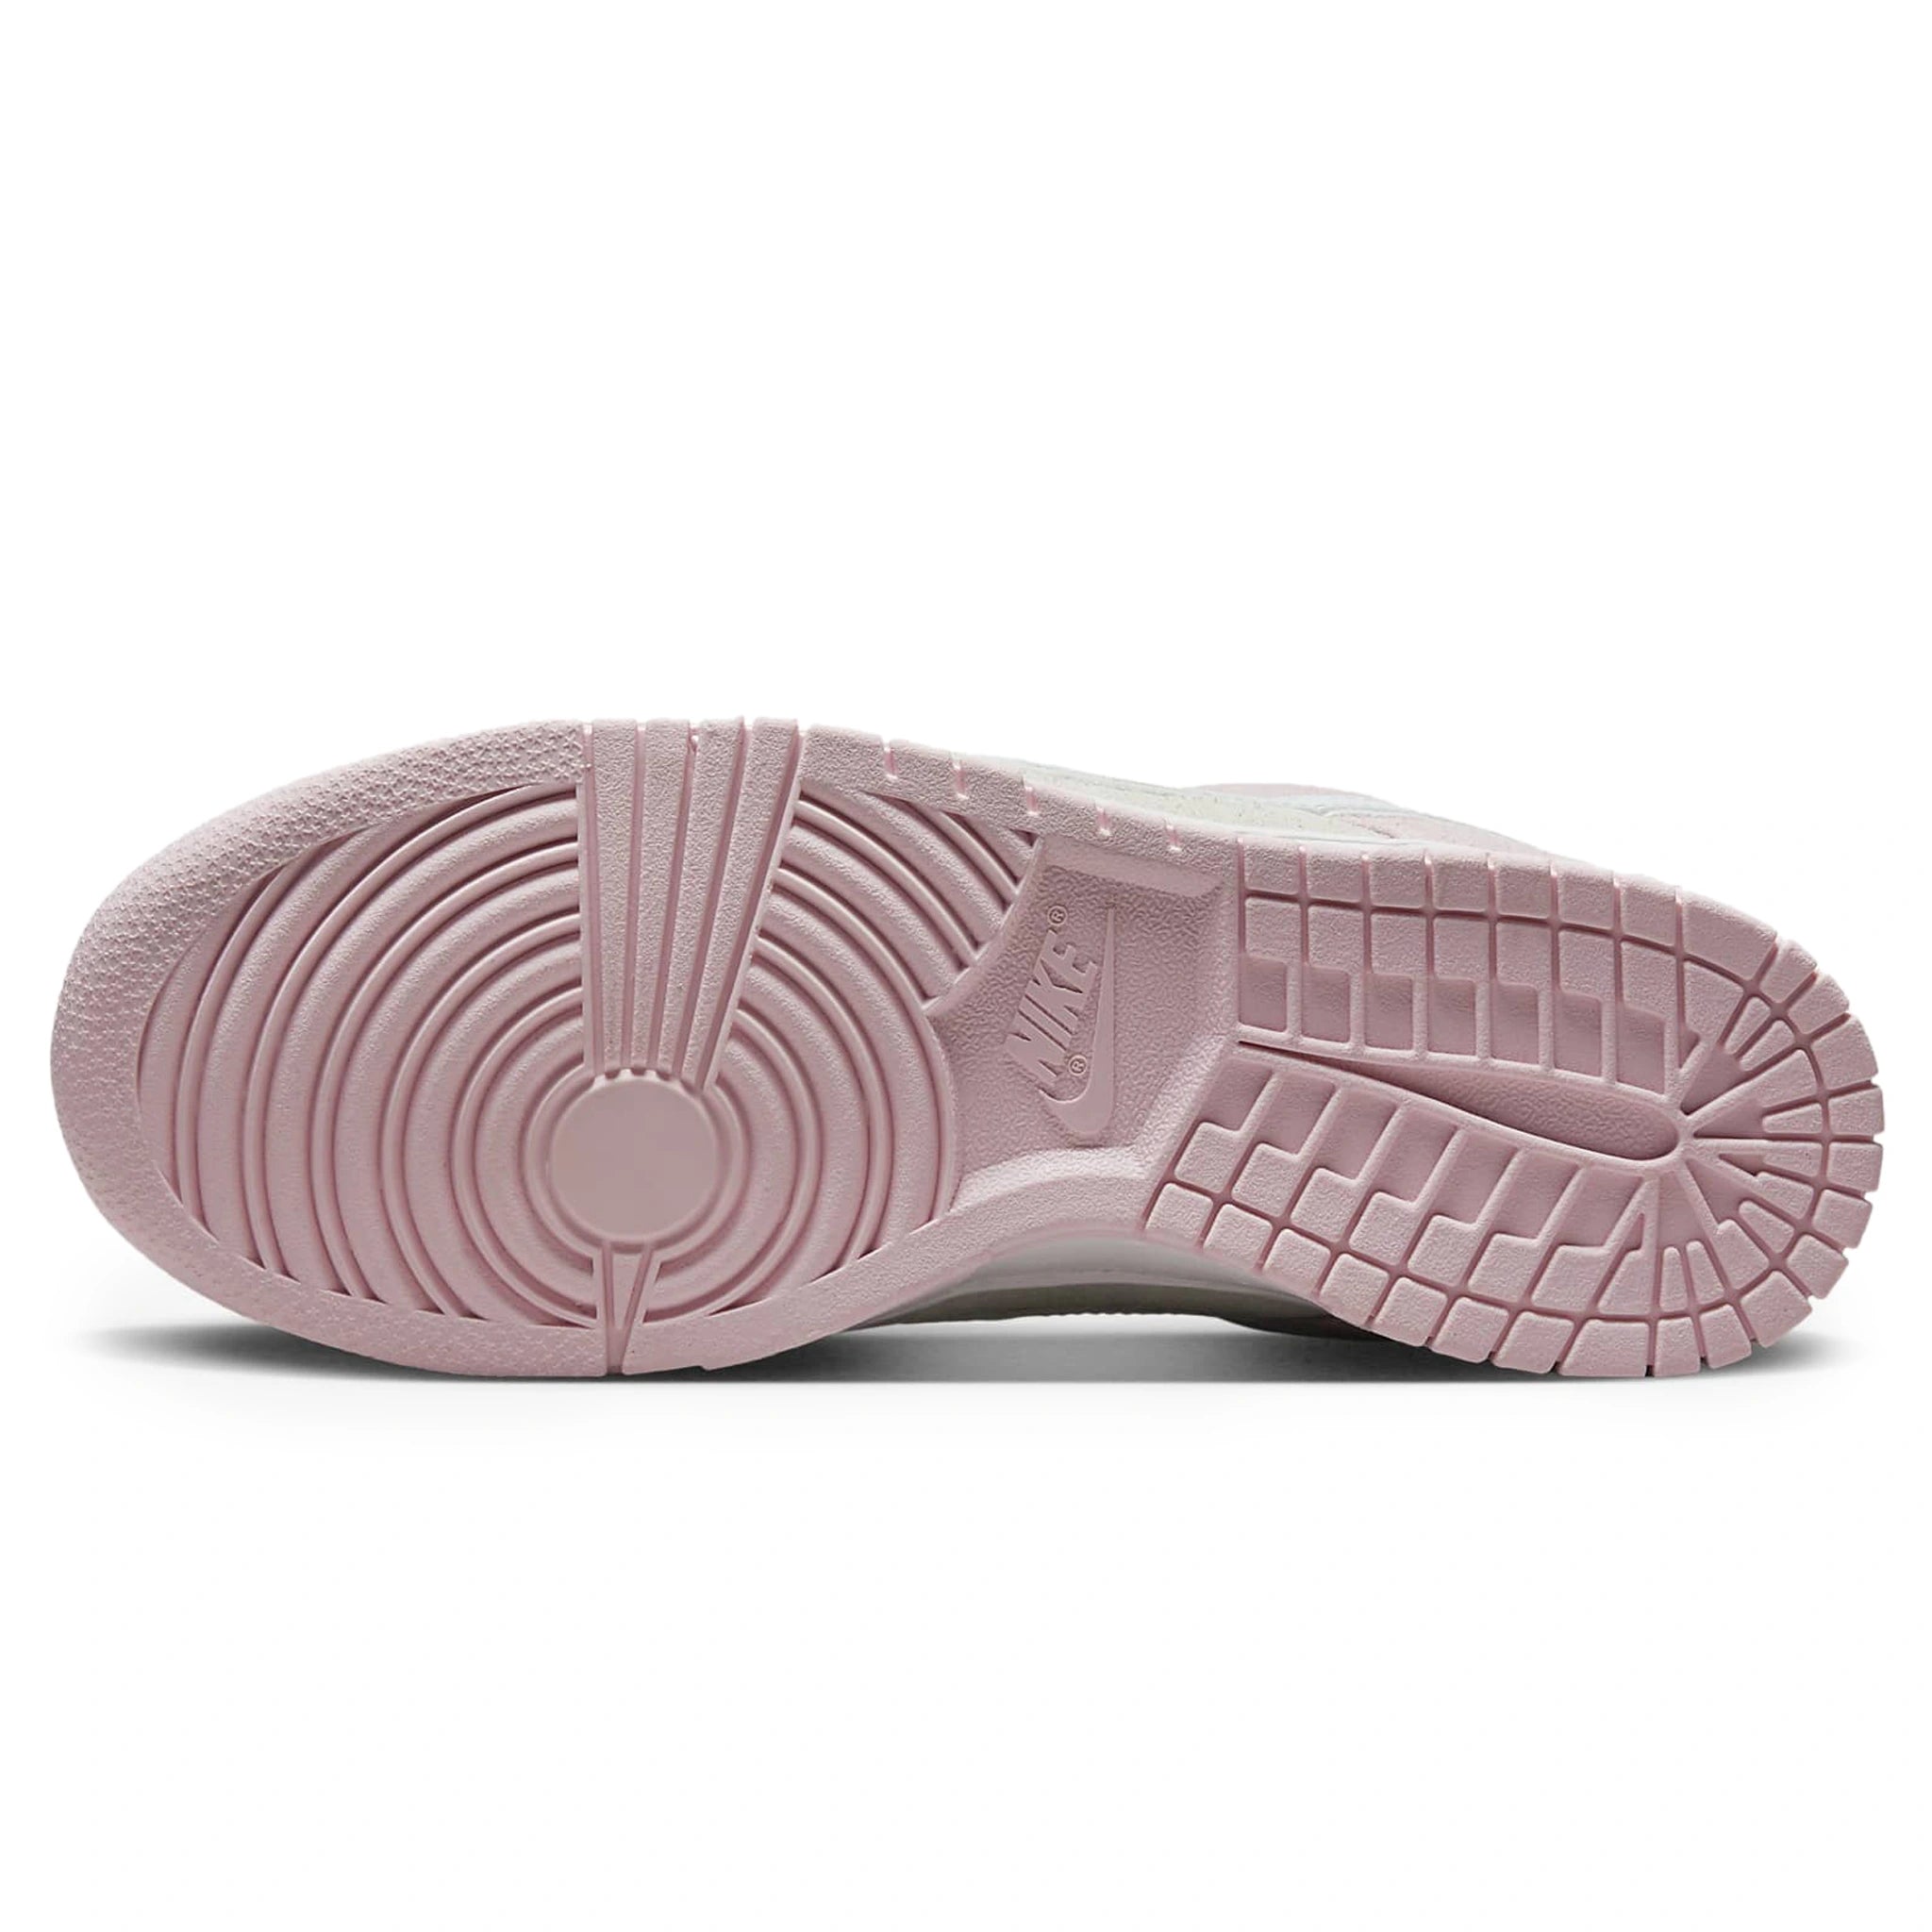 Sole view of Nike Dunk Low LX Pink Foam (W) DV3054-600